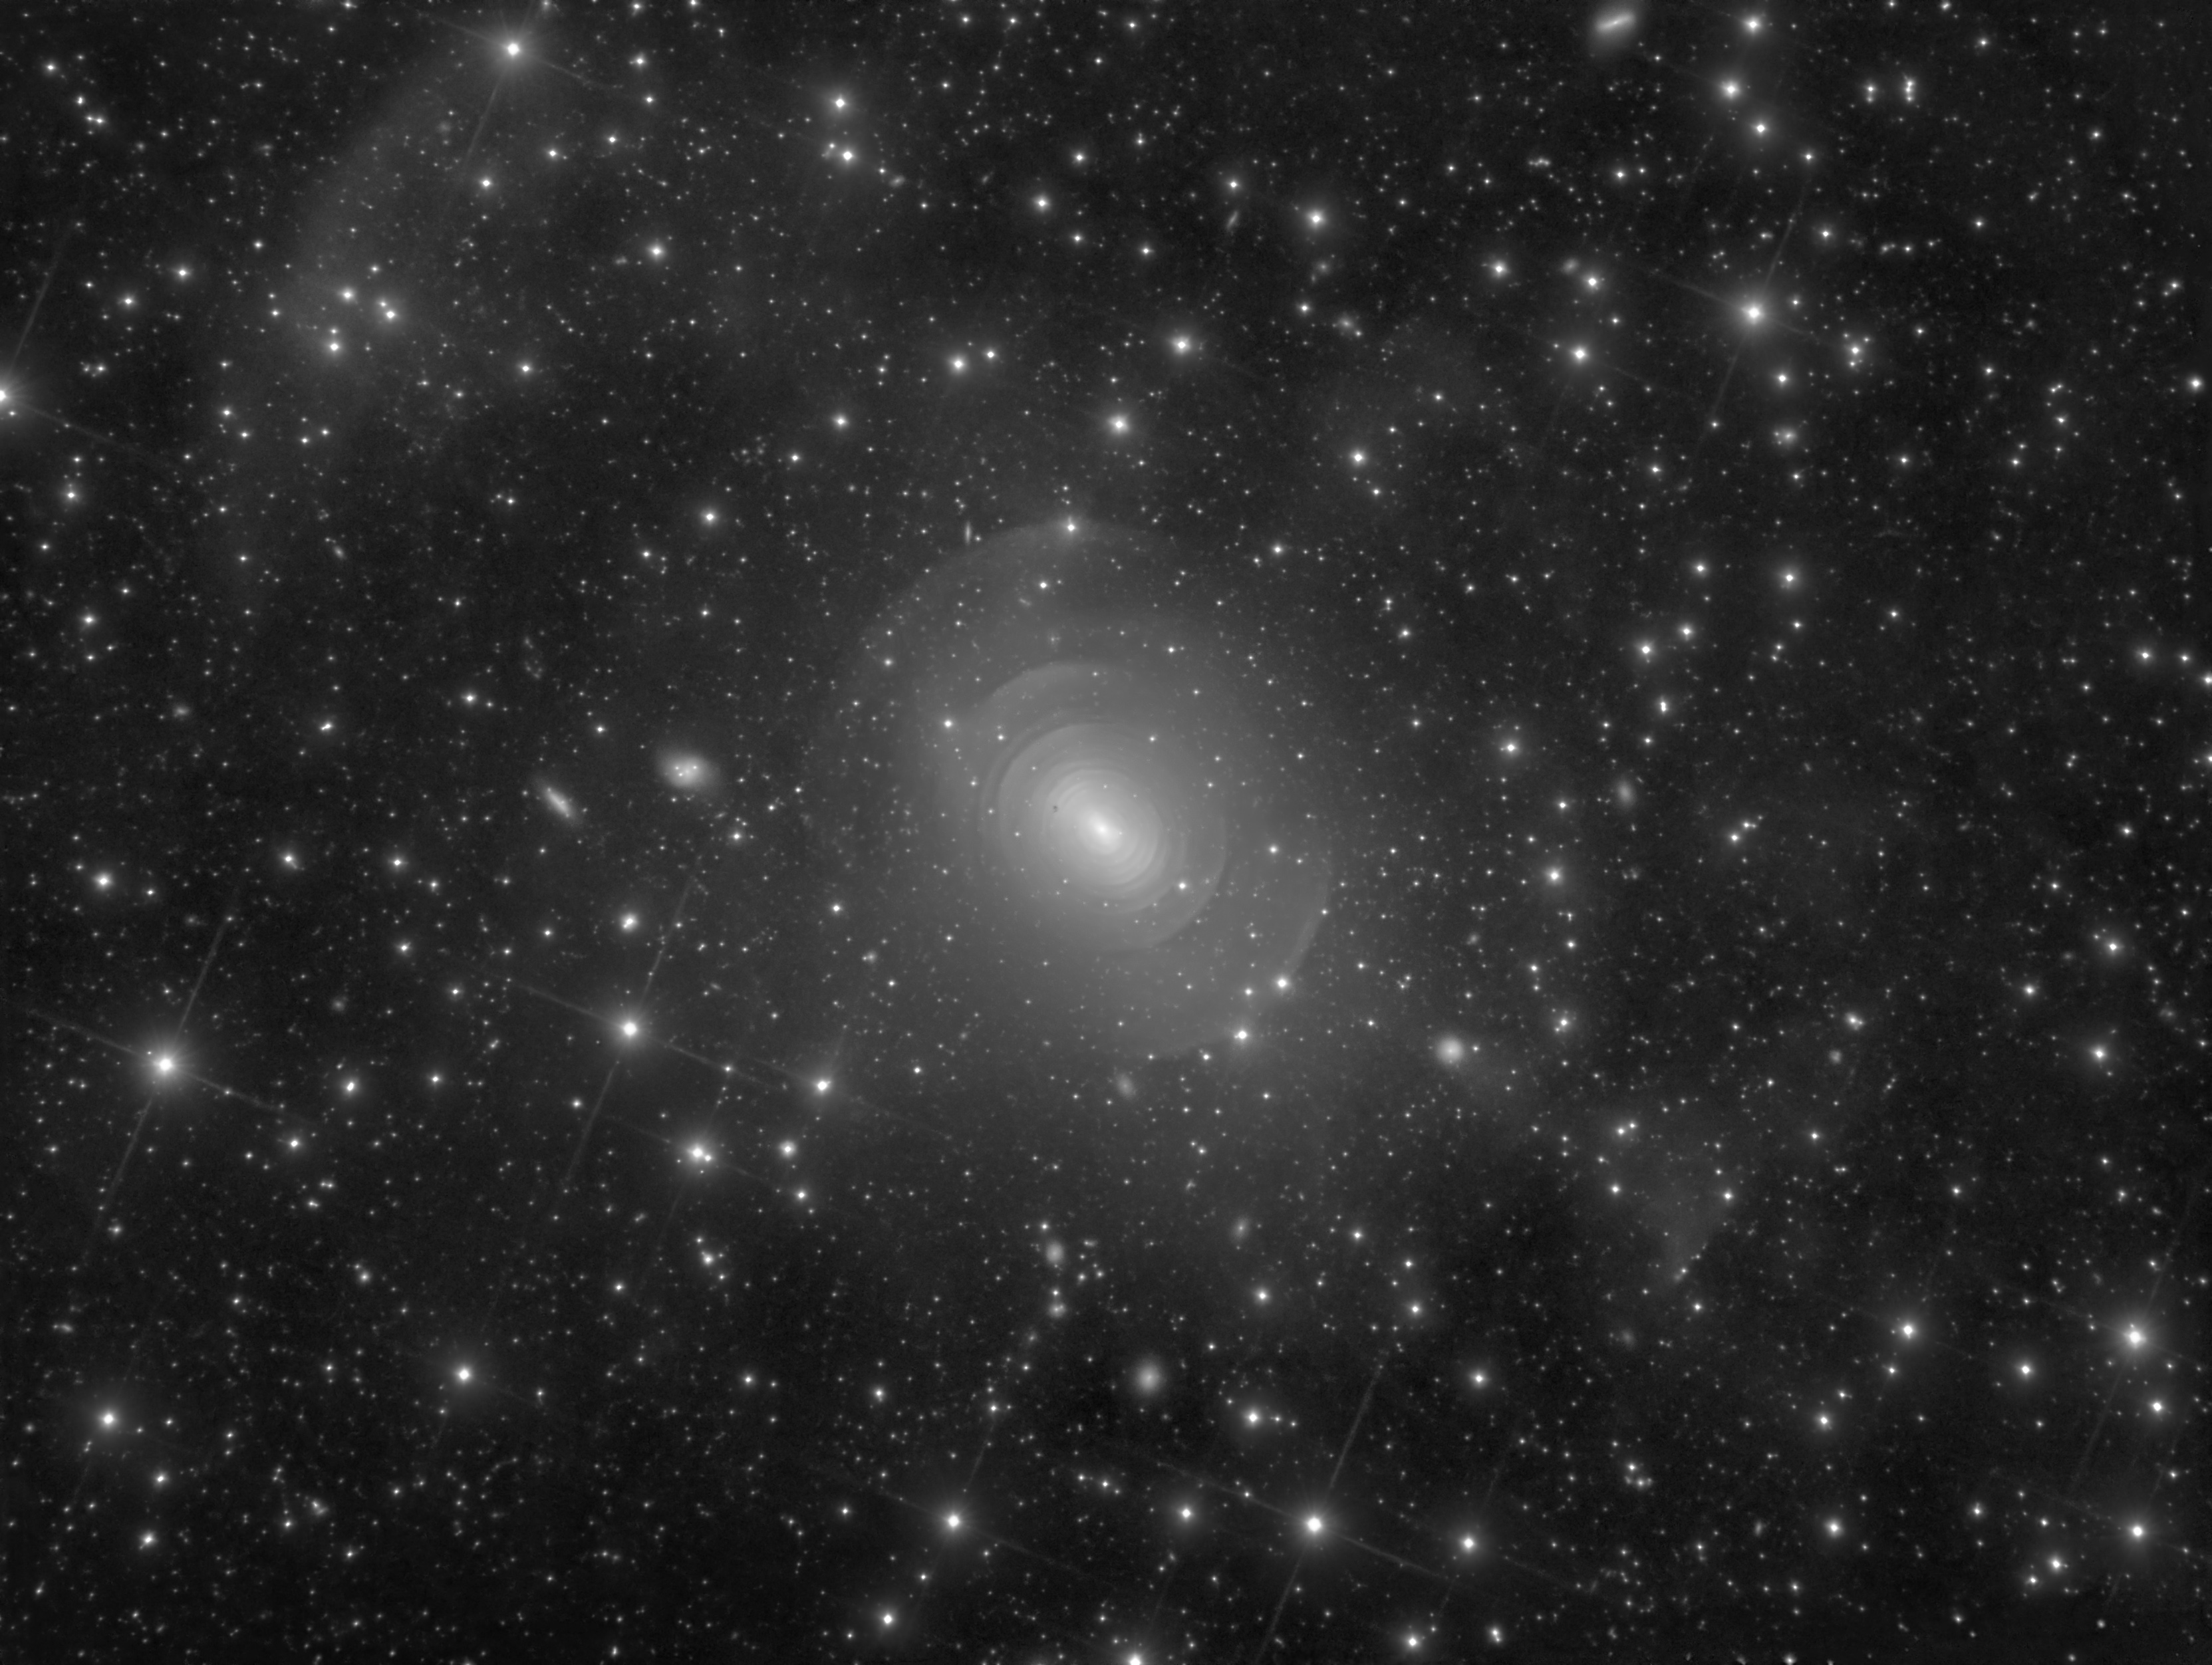 "Shells of Elliptical Galaxy NGC 3923 in Hydra by Rolf Wahl Olsen (2019) 